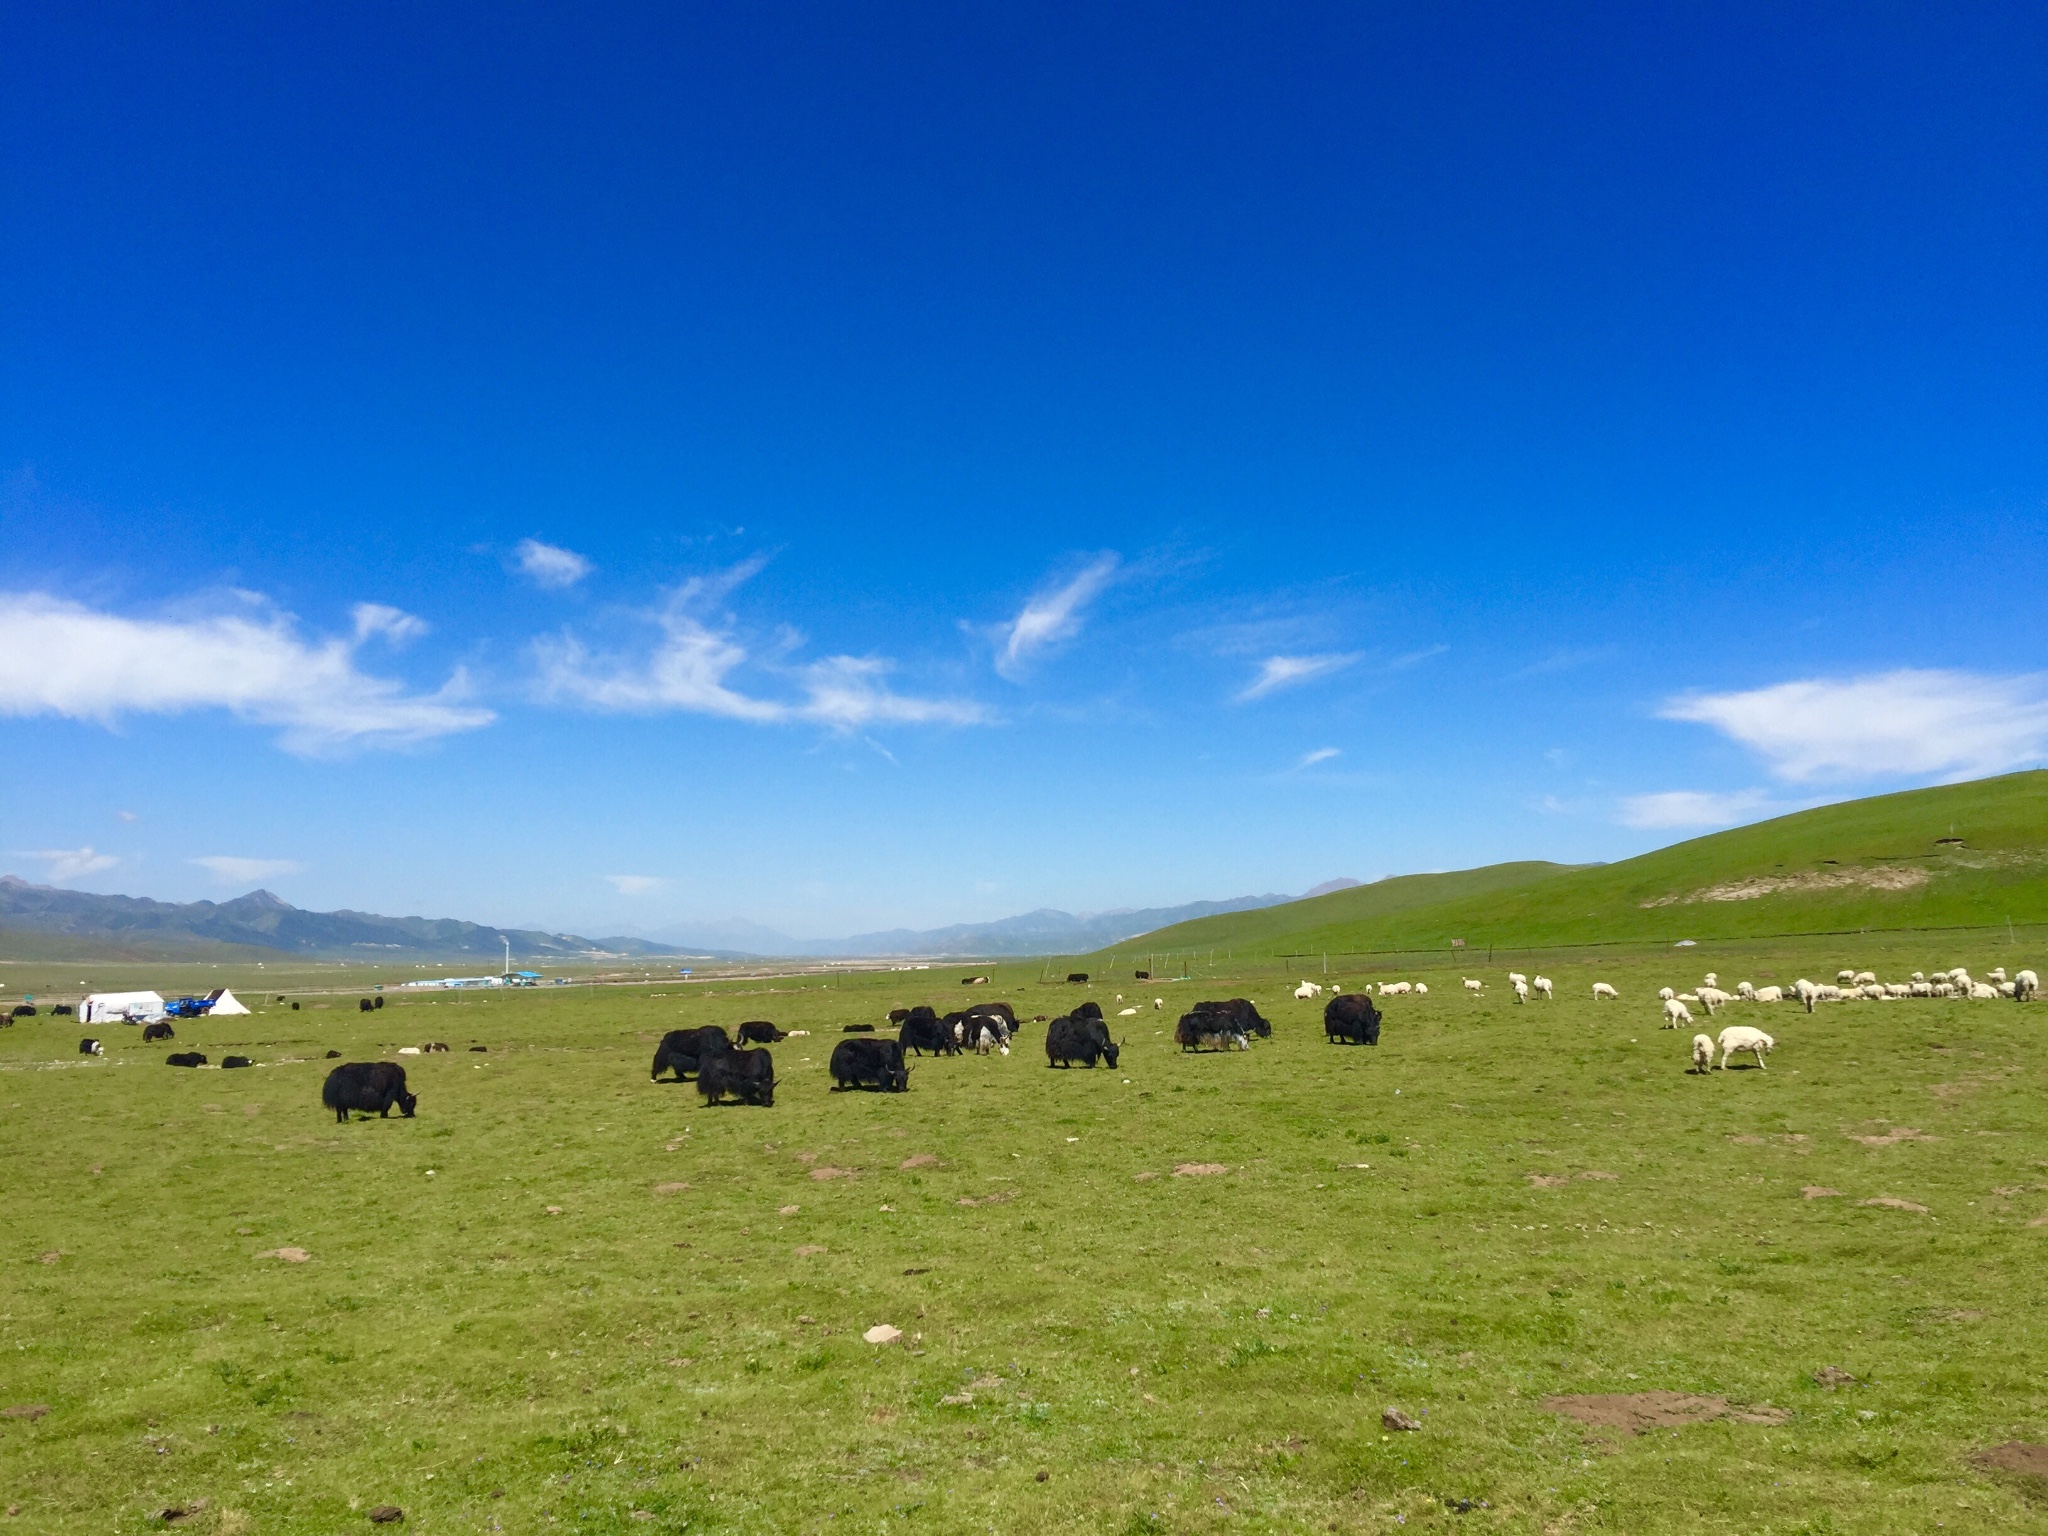 青海湖边的草原和牦牛,茶卡的云彩和星空,日月山上的经幡和羊群…和爱